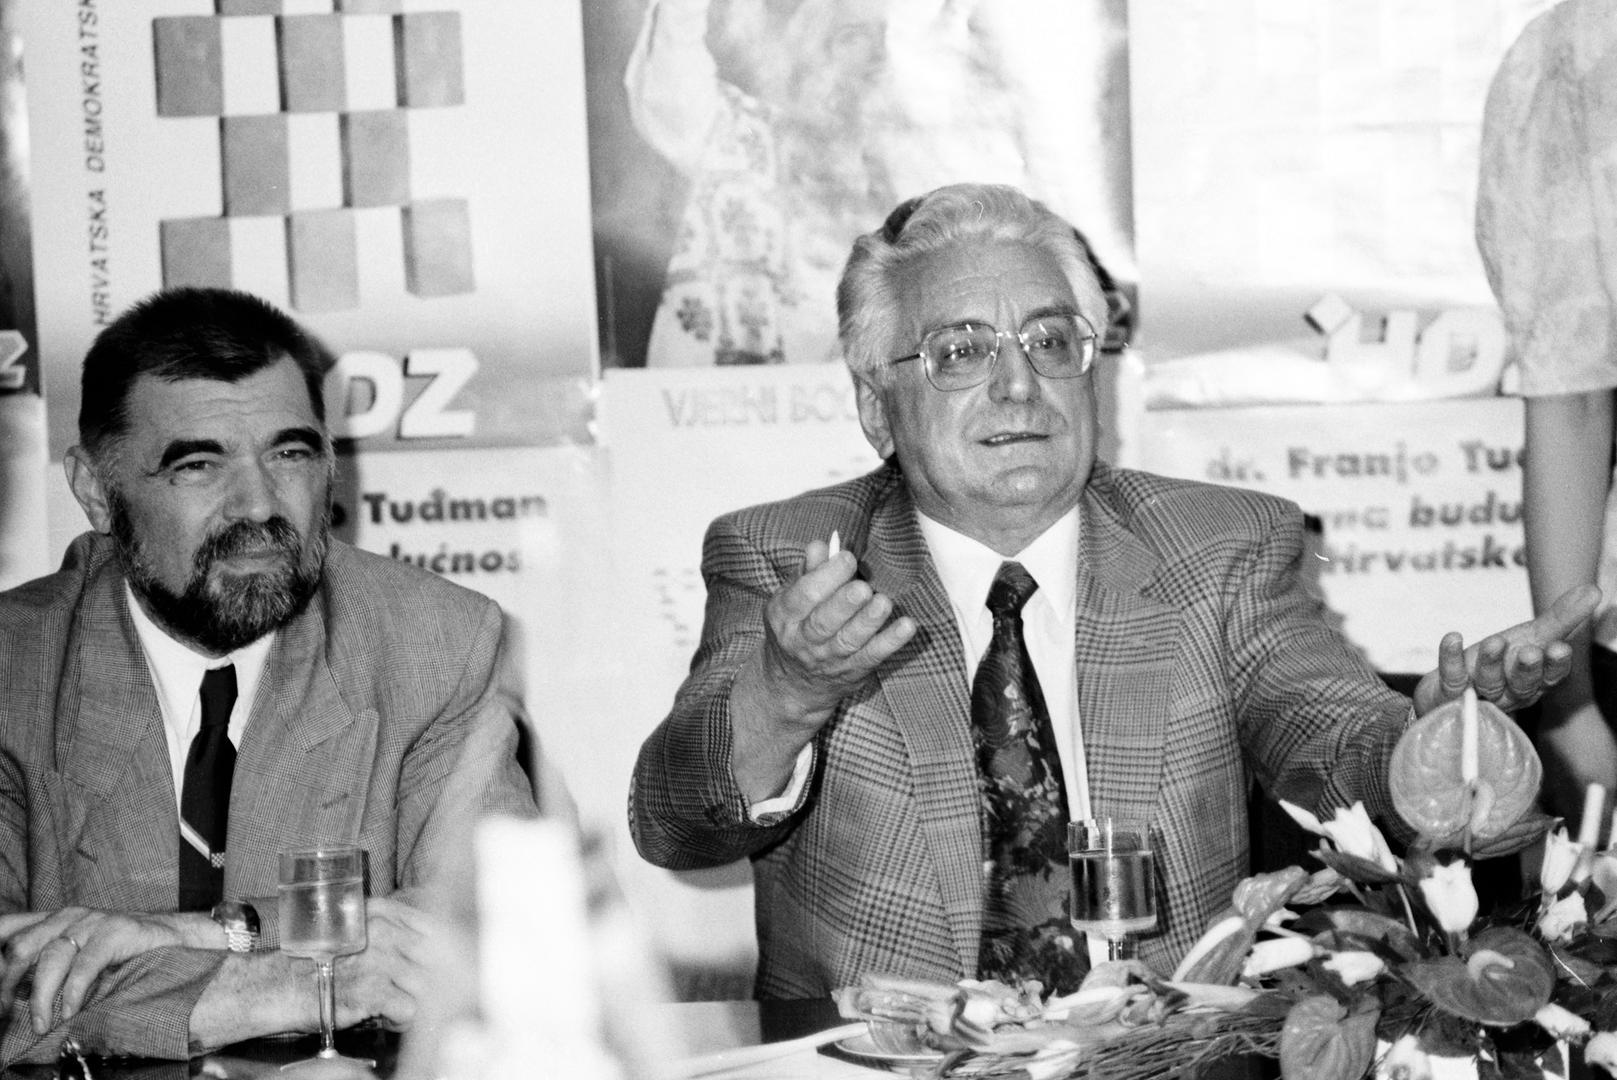 Nakon izbora 1992. godine u 2. sazivu Sabora u Zastupničkom domu HDZ je pod vodstvom Franje Tuđmana imao 85 od ukupno 138 zastupnika.